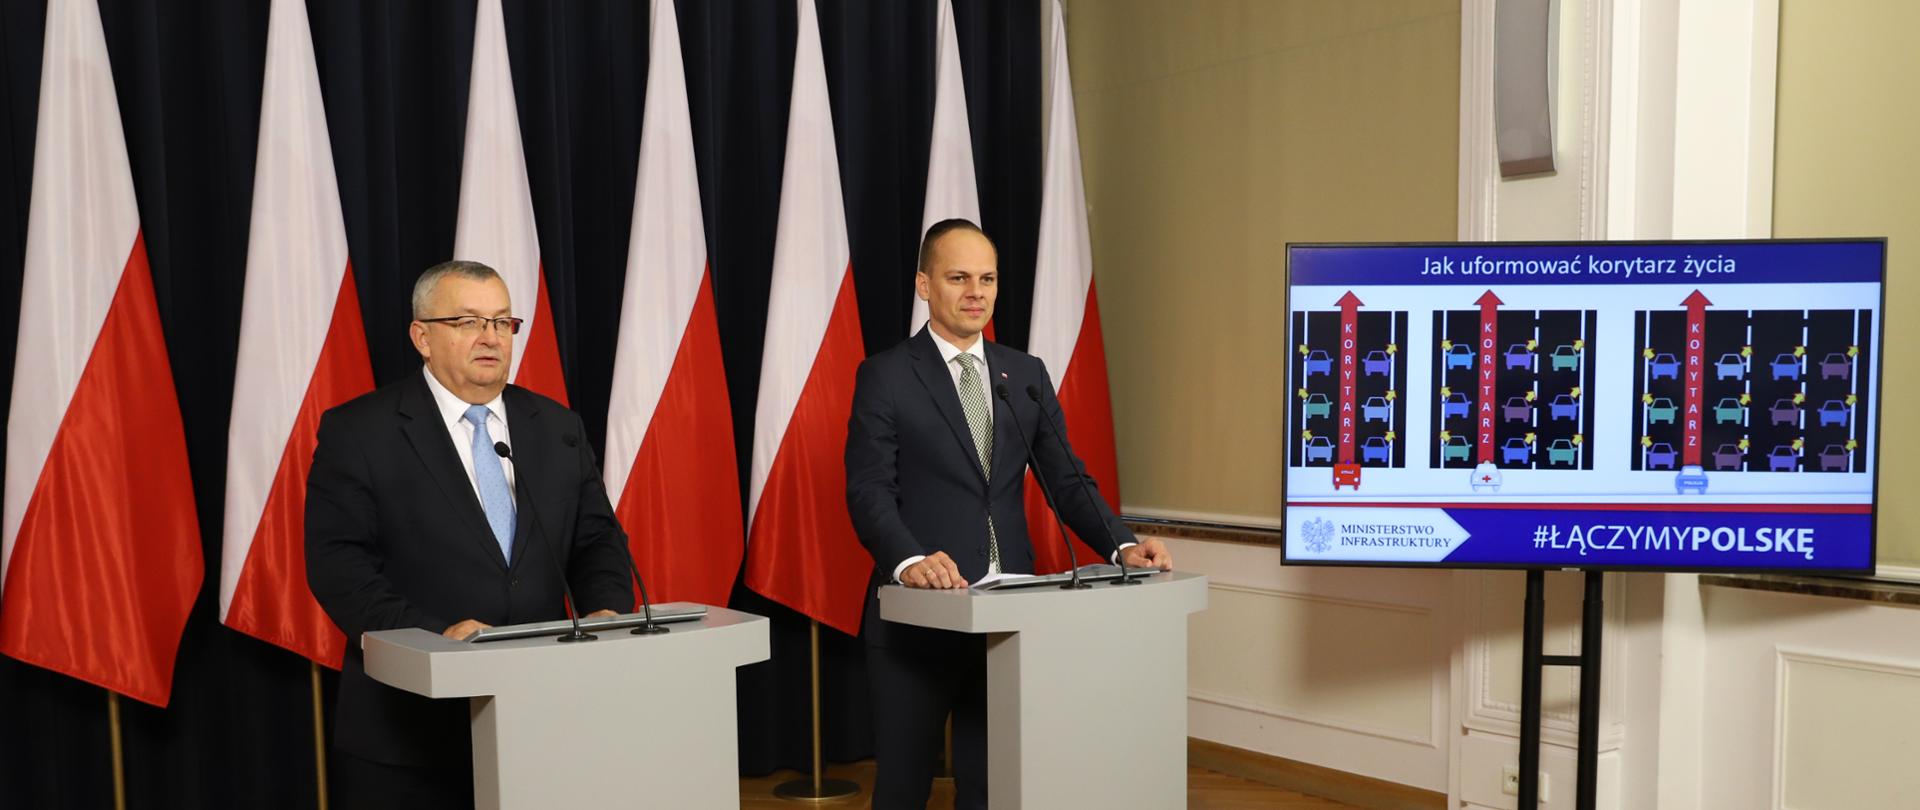 Minister A. Adamczyk i wiceminister R. Weber przedstawili założenia ustawy wprowadzającej tzw. korytarz życia i jazdę na suwak